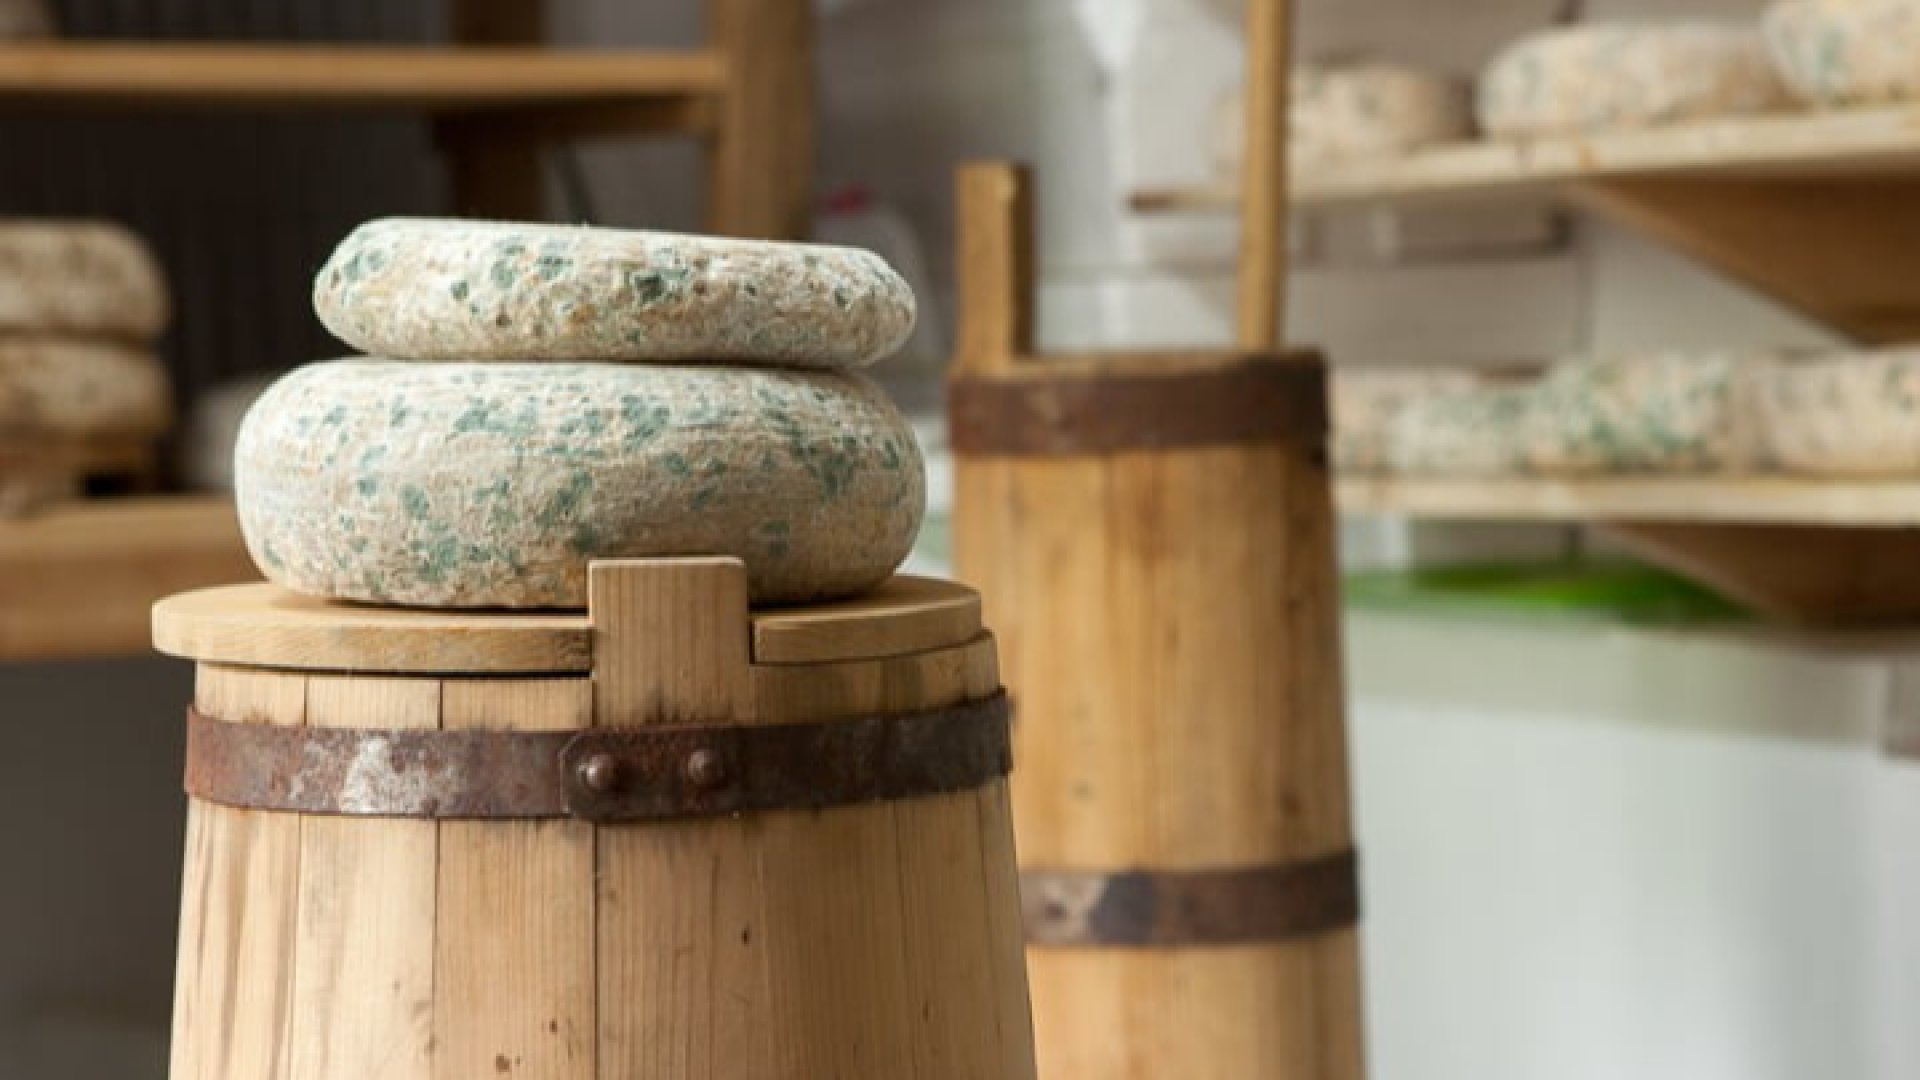 Българското зелено сирене от село Черни Вит, което покори света 